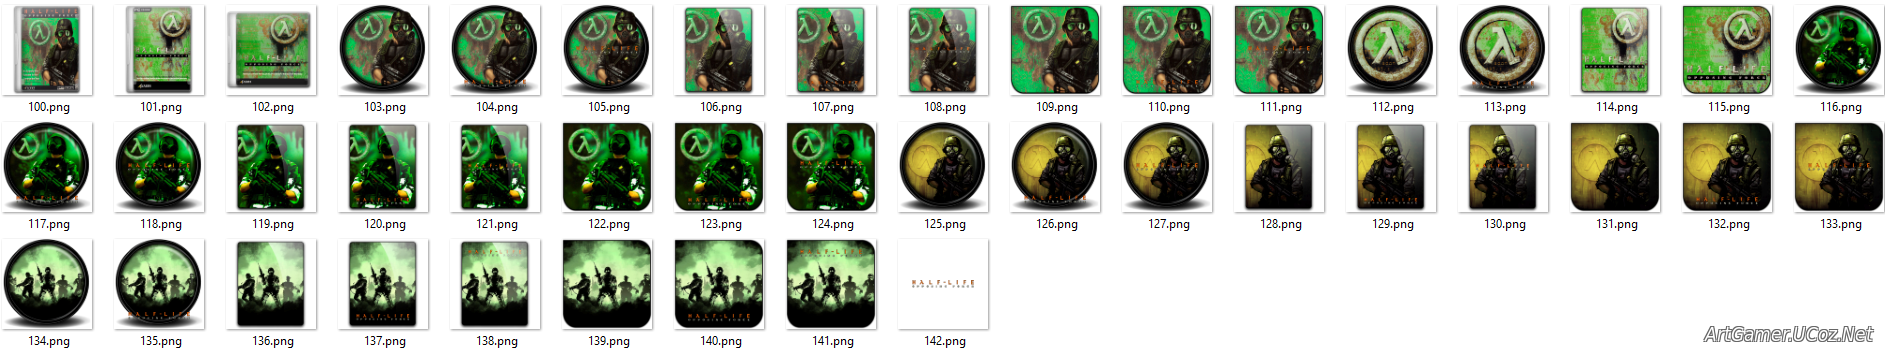 Иконки из набора к игре Half-Life Opposing Force